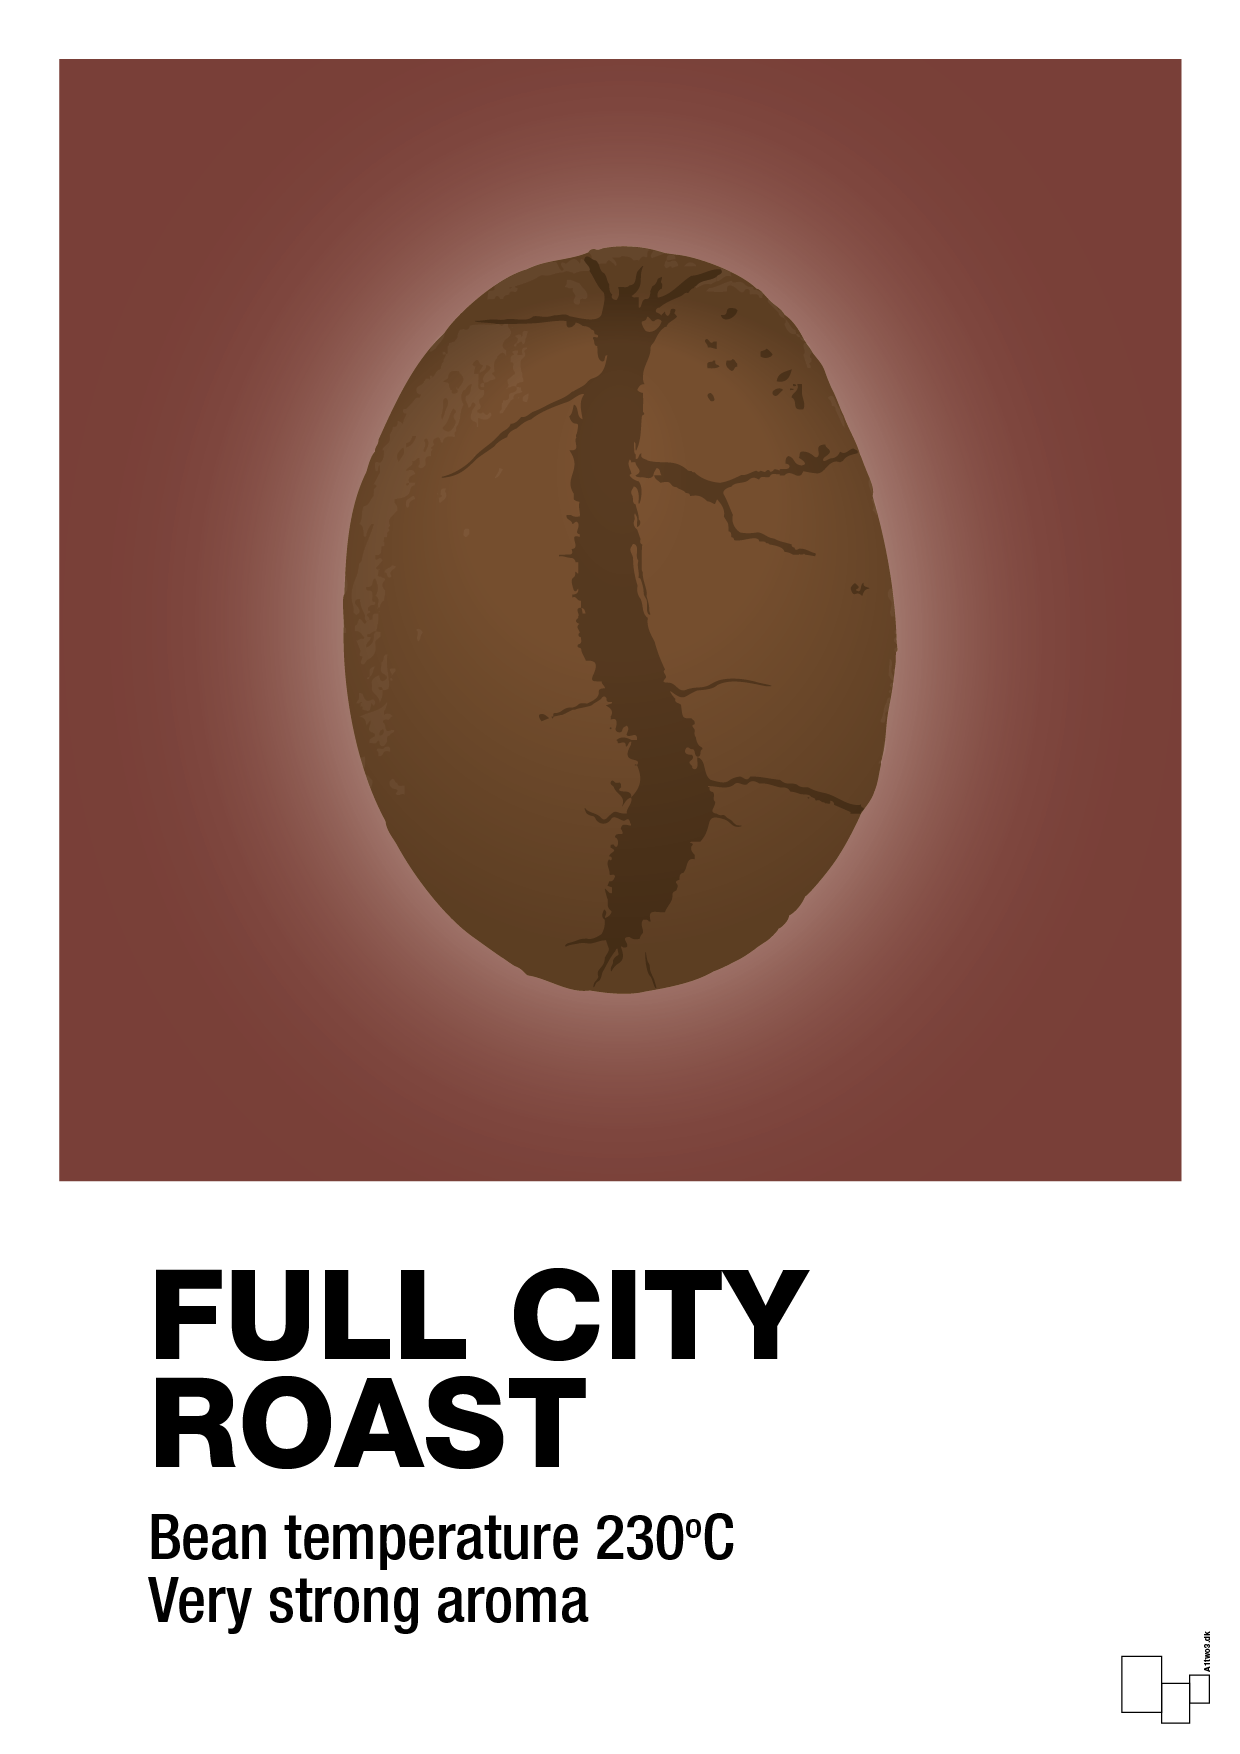 full city roast - Plakat med Mad & Drikke i Red Pepper